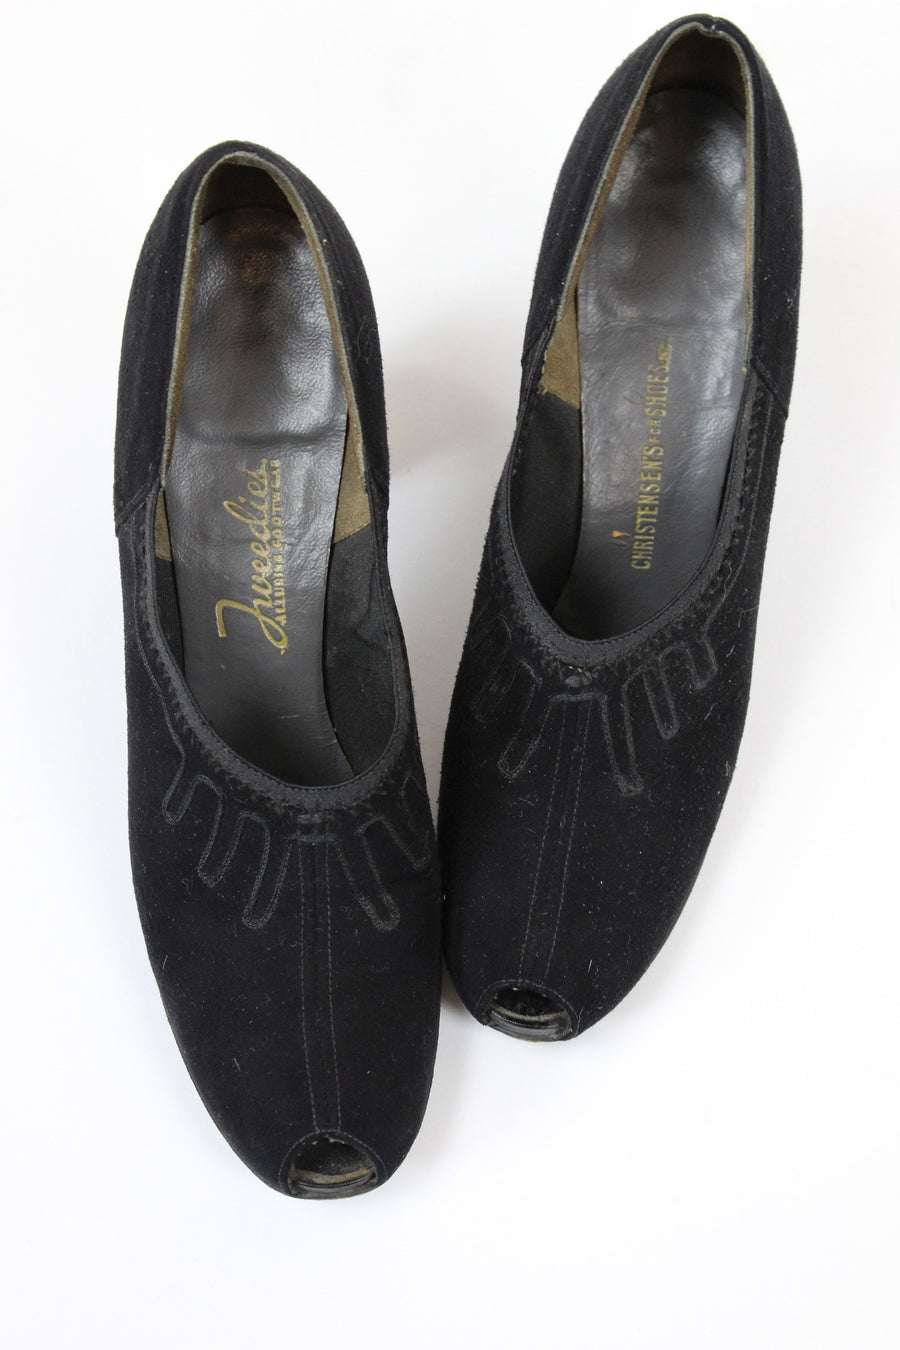 1930s suede peep toe shoes | vintage soutache pumps | size 6.5 us